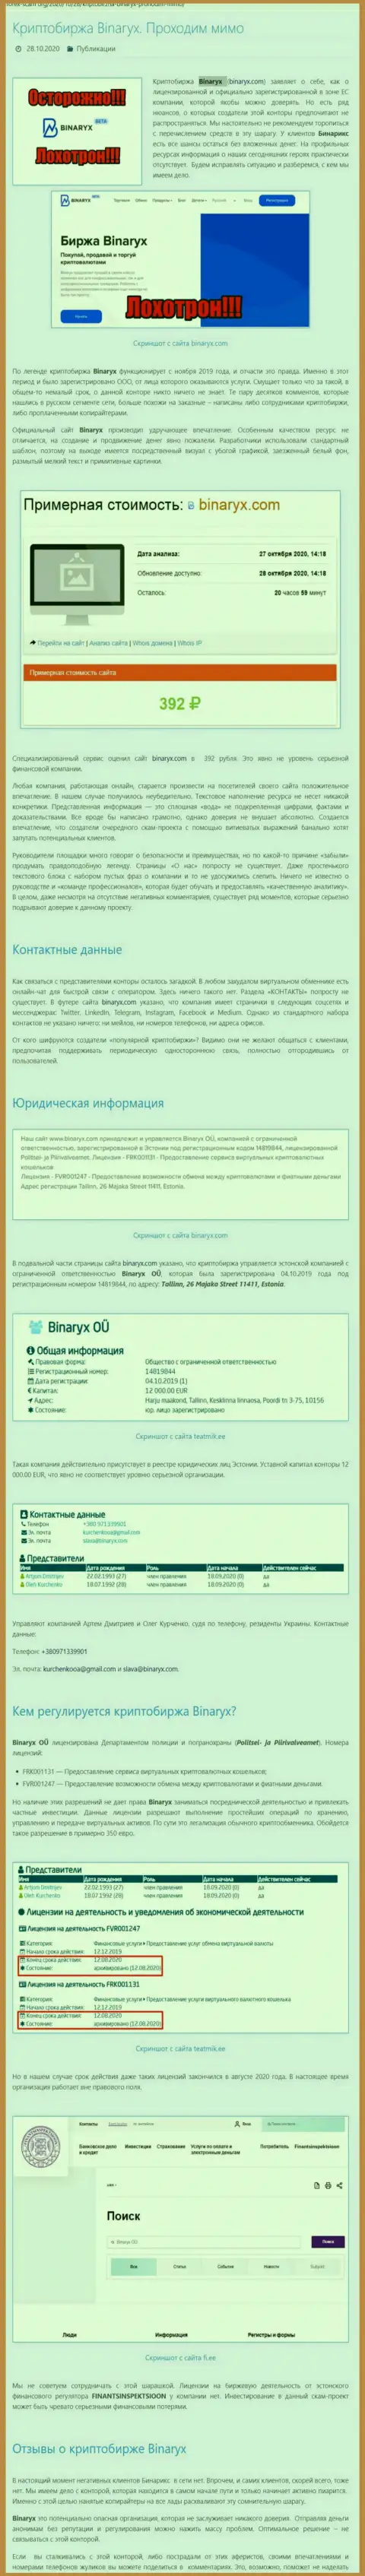 Binaryx Com - это ШУЛЕРА !!! Отжатие денежных активов гарантируют стопроцентно (обзор организации)